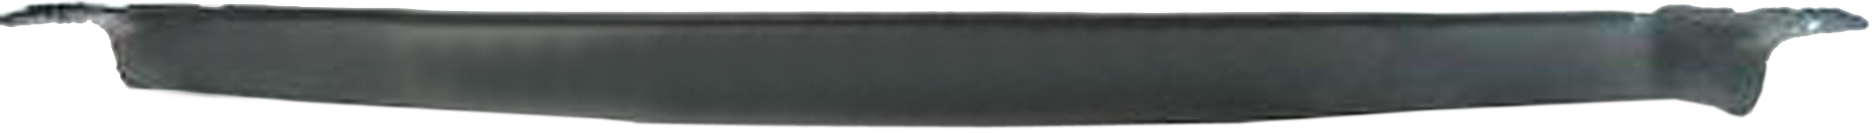 Aftermarket APRON/VALANCE/FILLER PLASTIC for GMC - V2500, V2500,87-87,Front bumper deflector